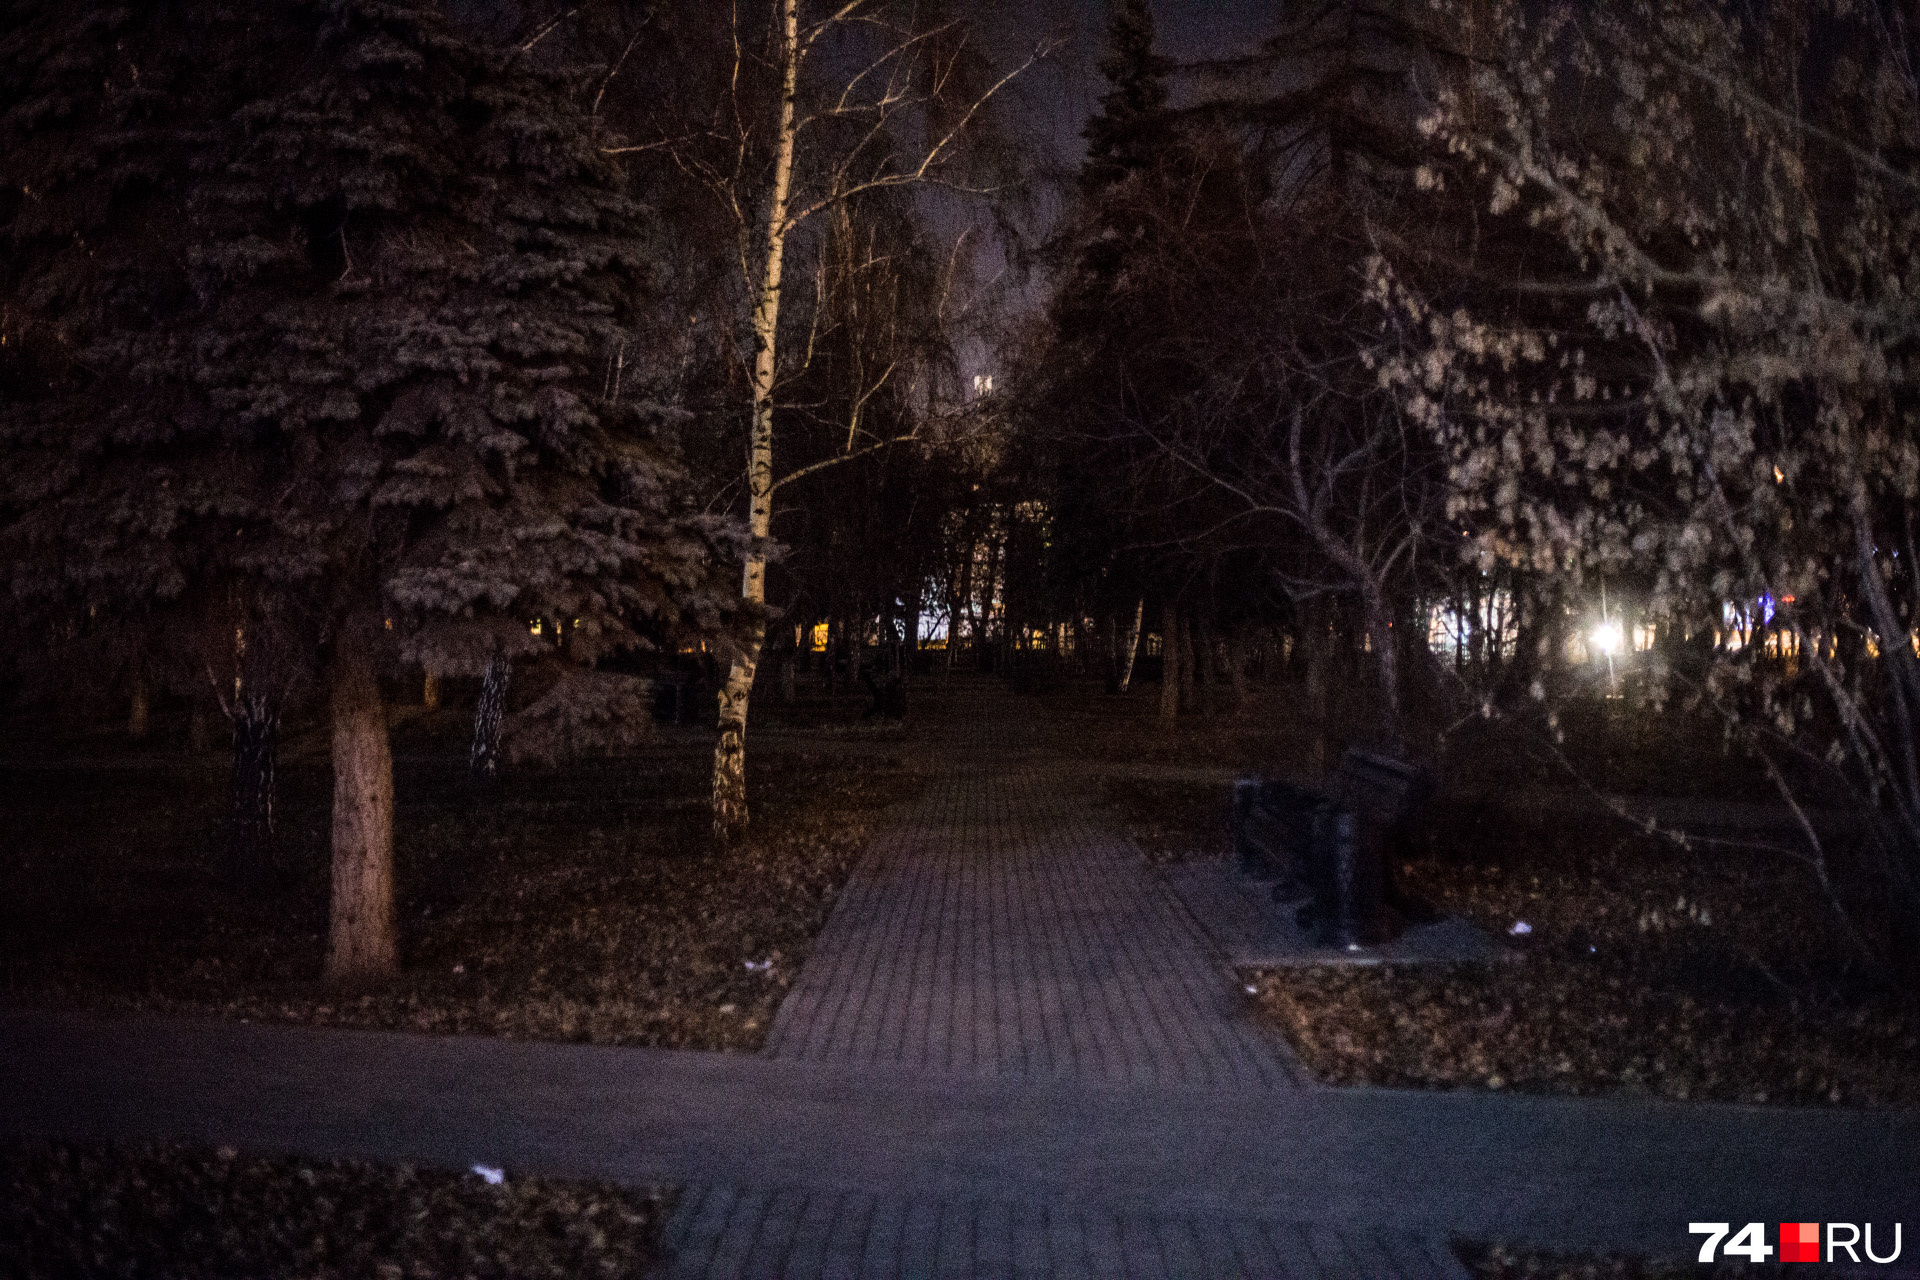 Это не дремучий лес. Это недавно обновлённый сквер на улице Кирова, но на фонари у властей копеечки не нашлось